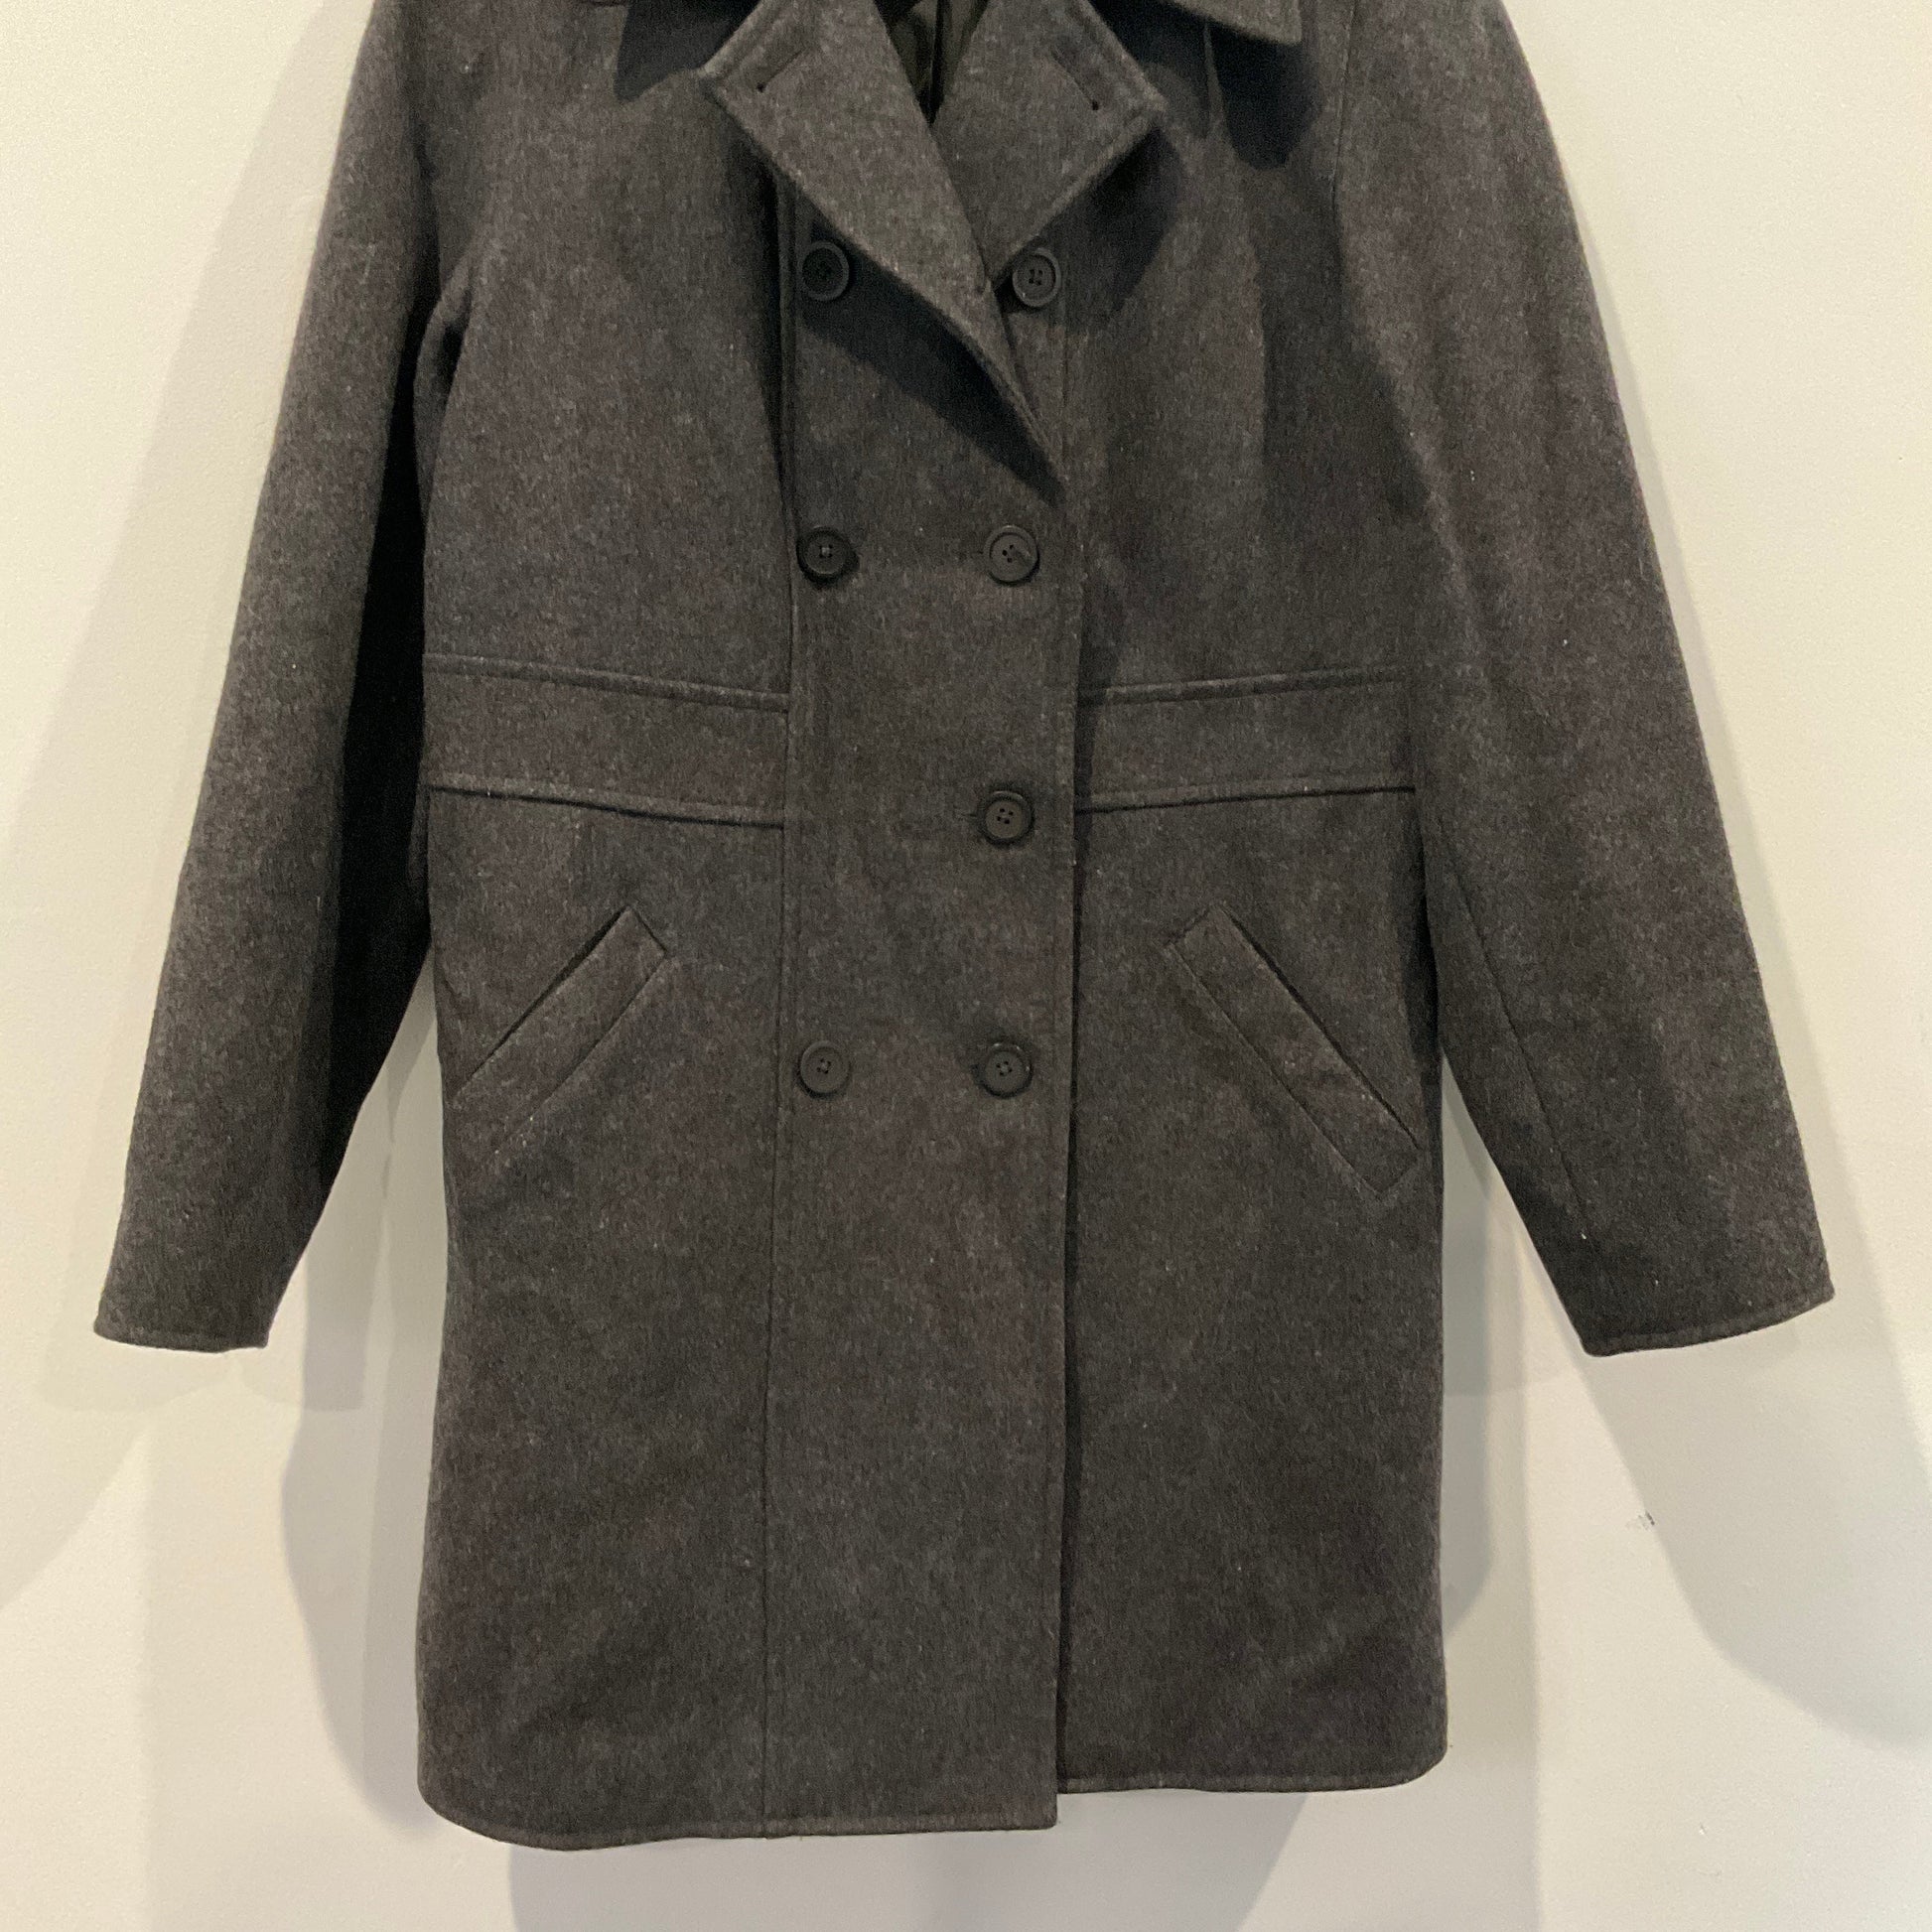 Gap - Winter Coat Coats & Jackets